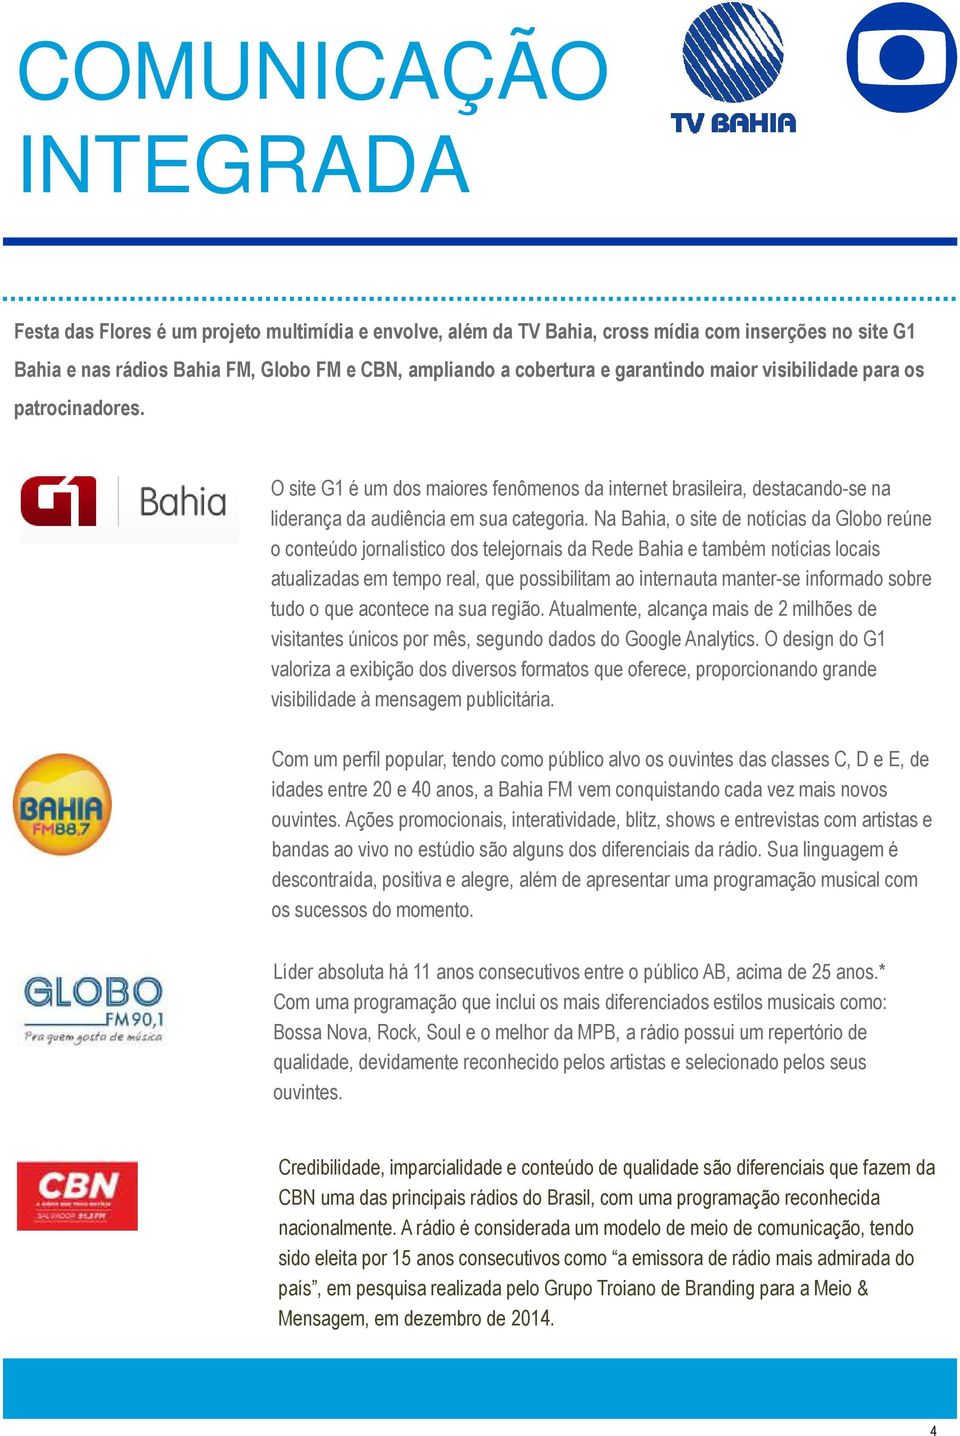 Na Bahia, o site de notícias da Globo reúne o conteúdo jornalístico dos telejornais da Rede Bahia e também notícias locais atualizadas em tempo real, que possibilitam ao internauta manter-se